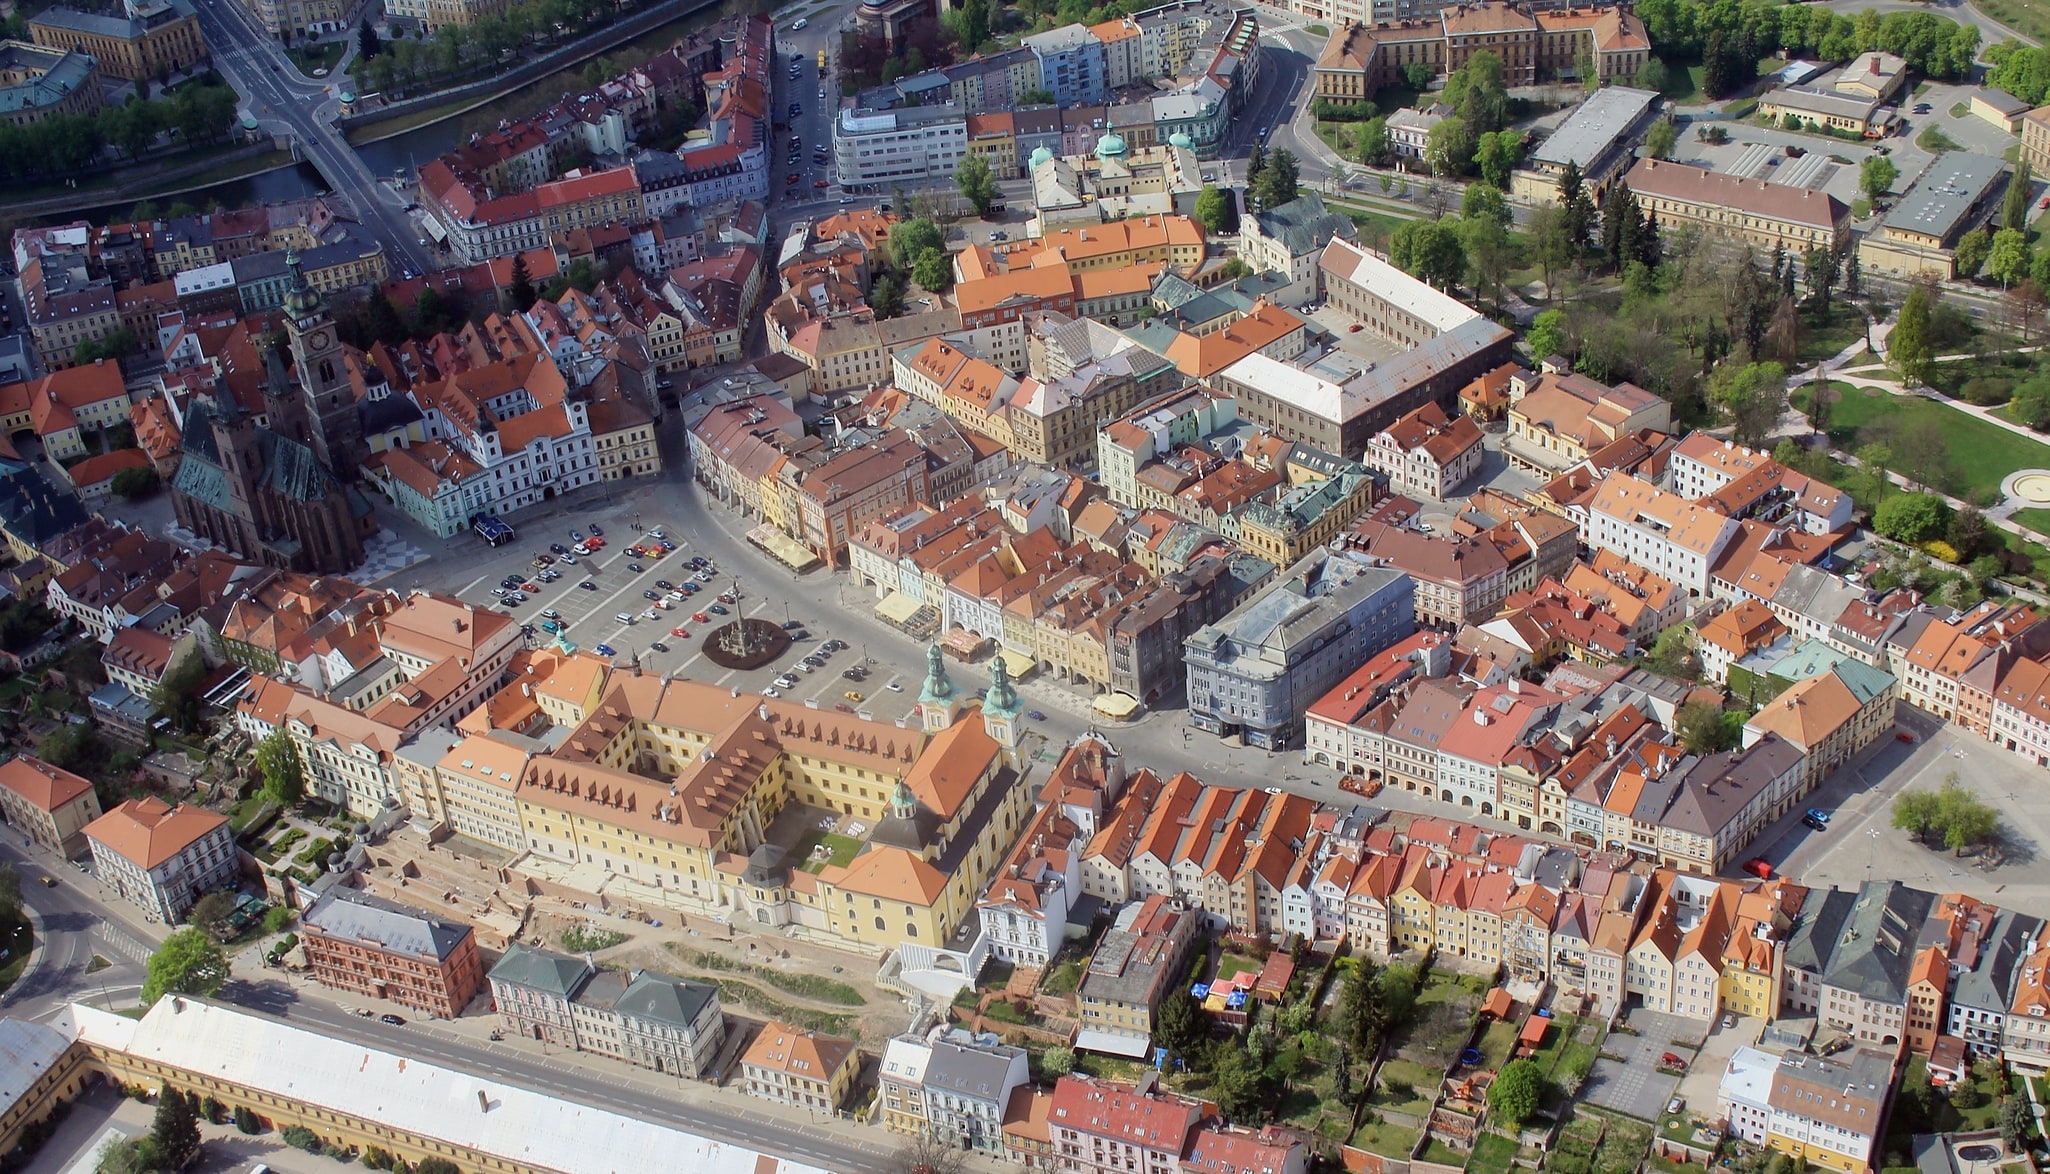 Hradec Králové, Czech Republic